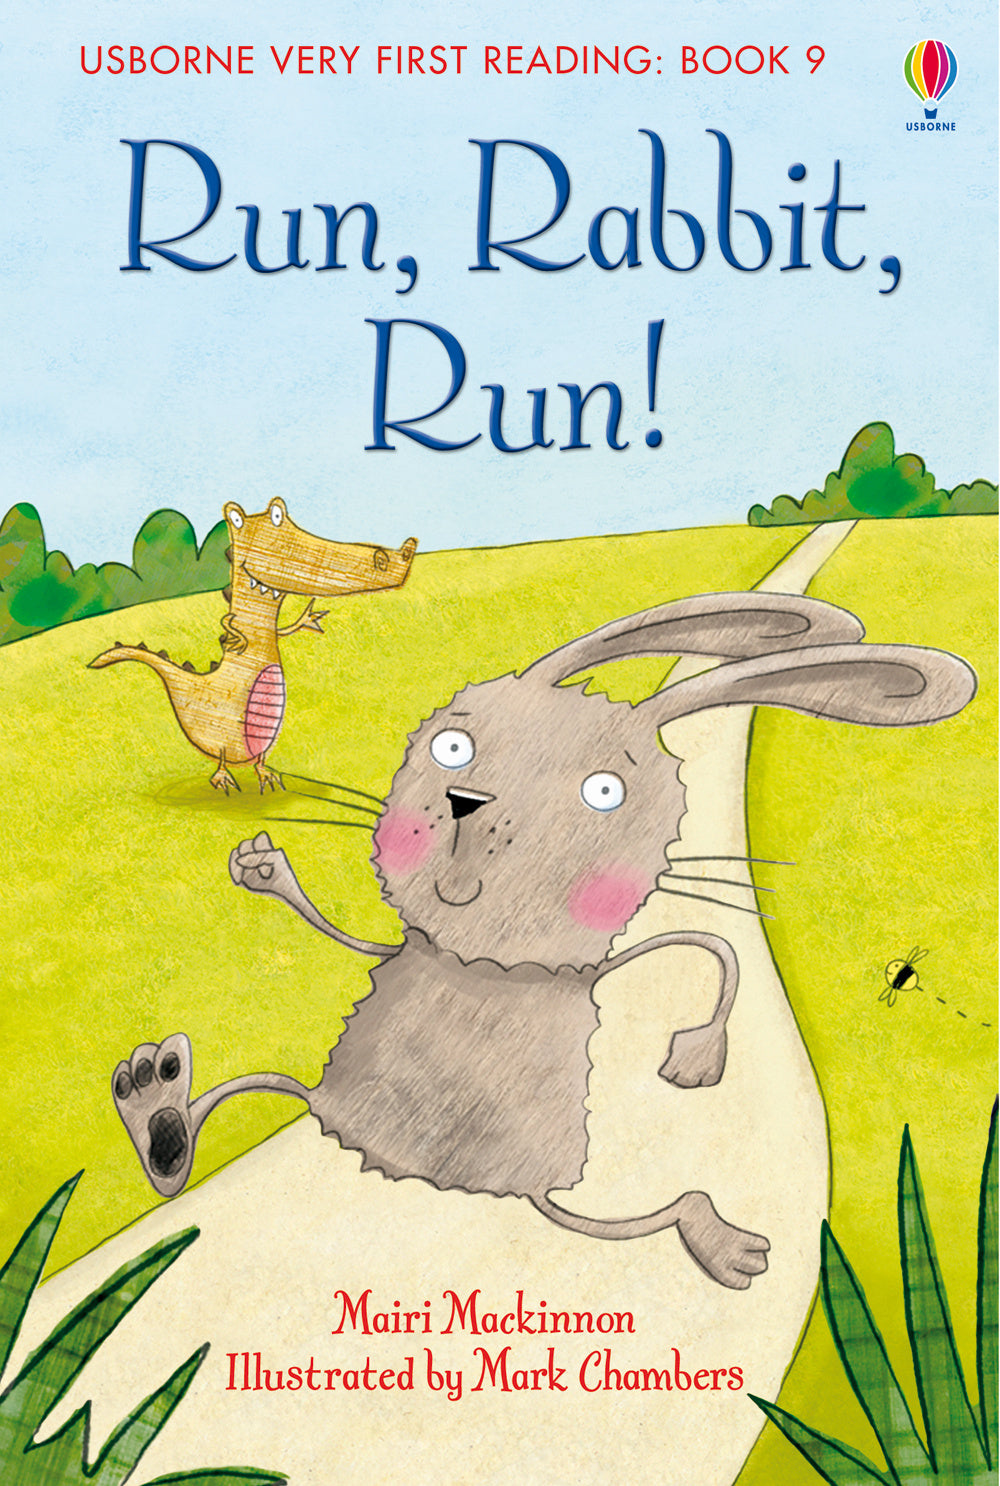 Run, rabbit, run!.